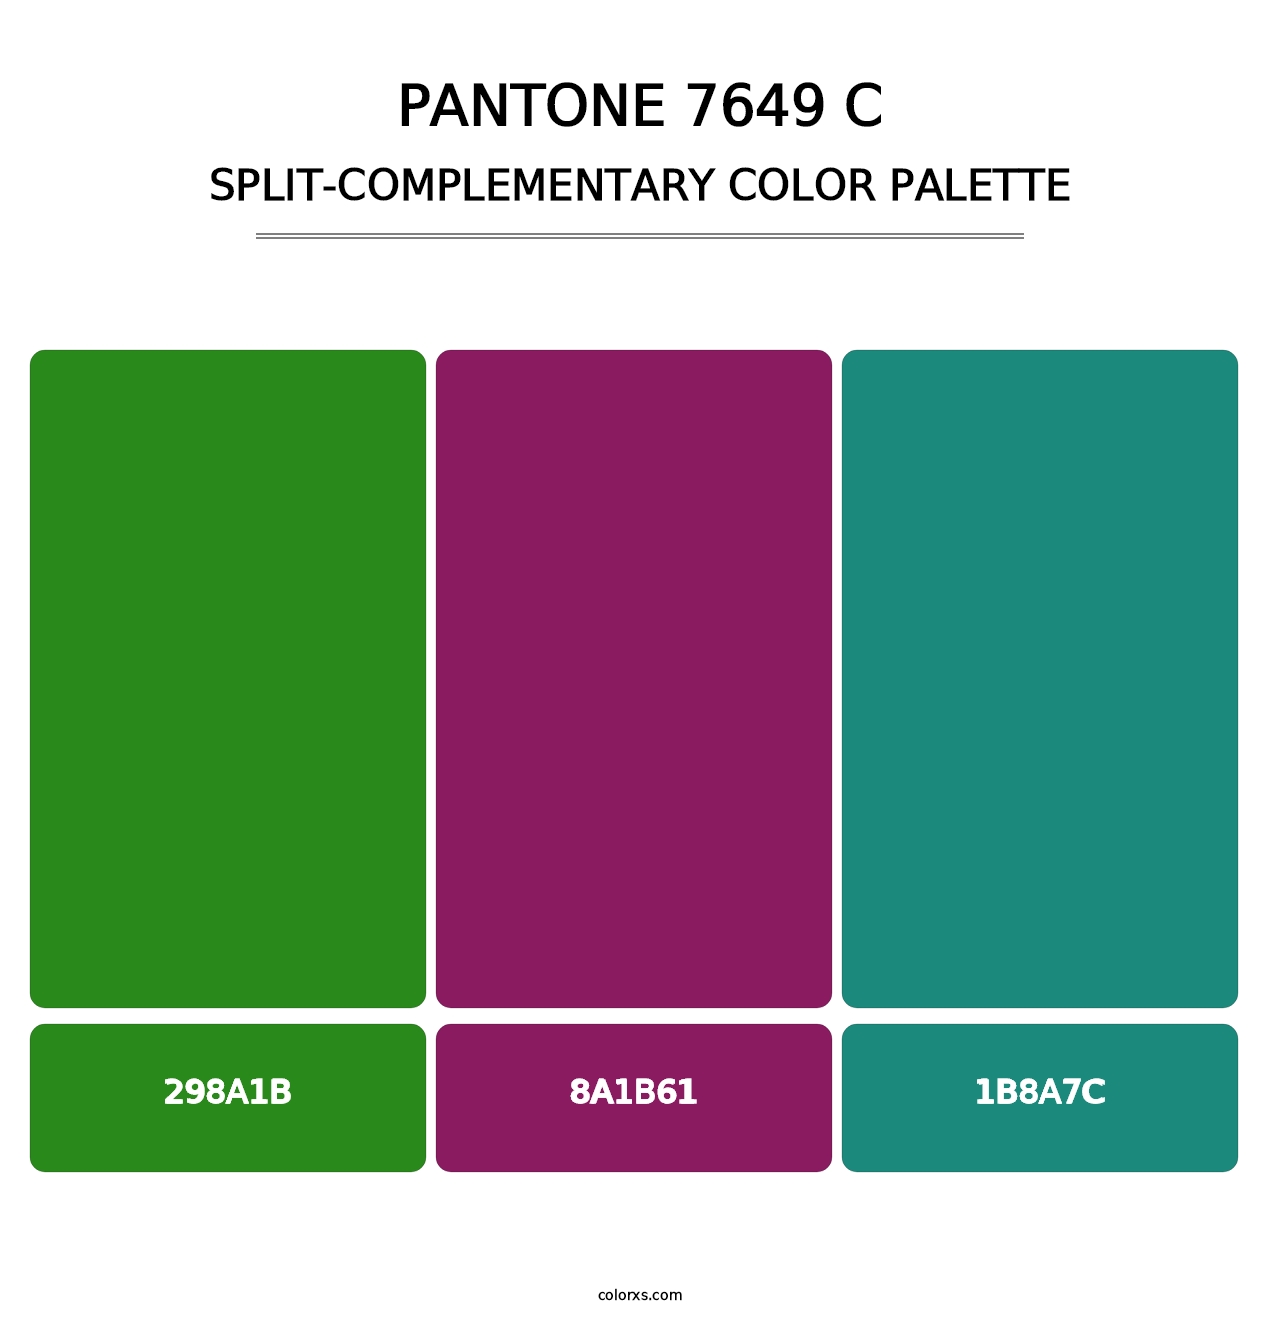 PANTONE 7649 C - Split-Complementary Color Palette